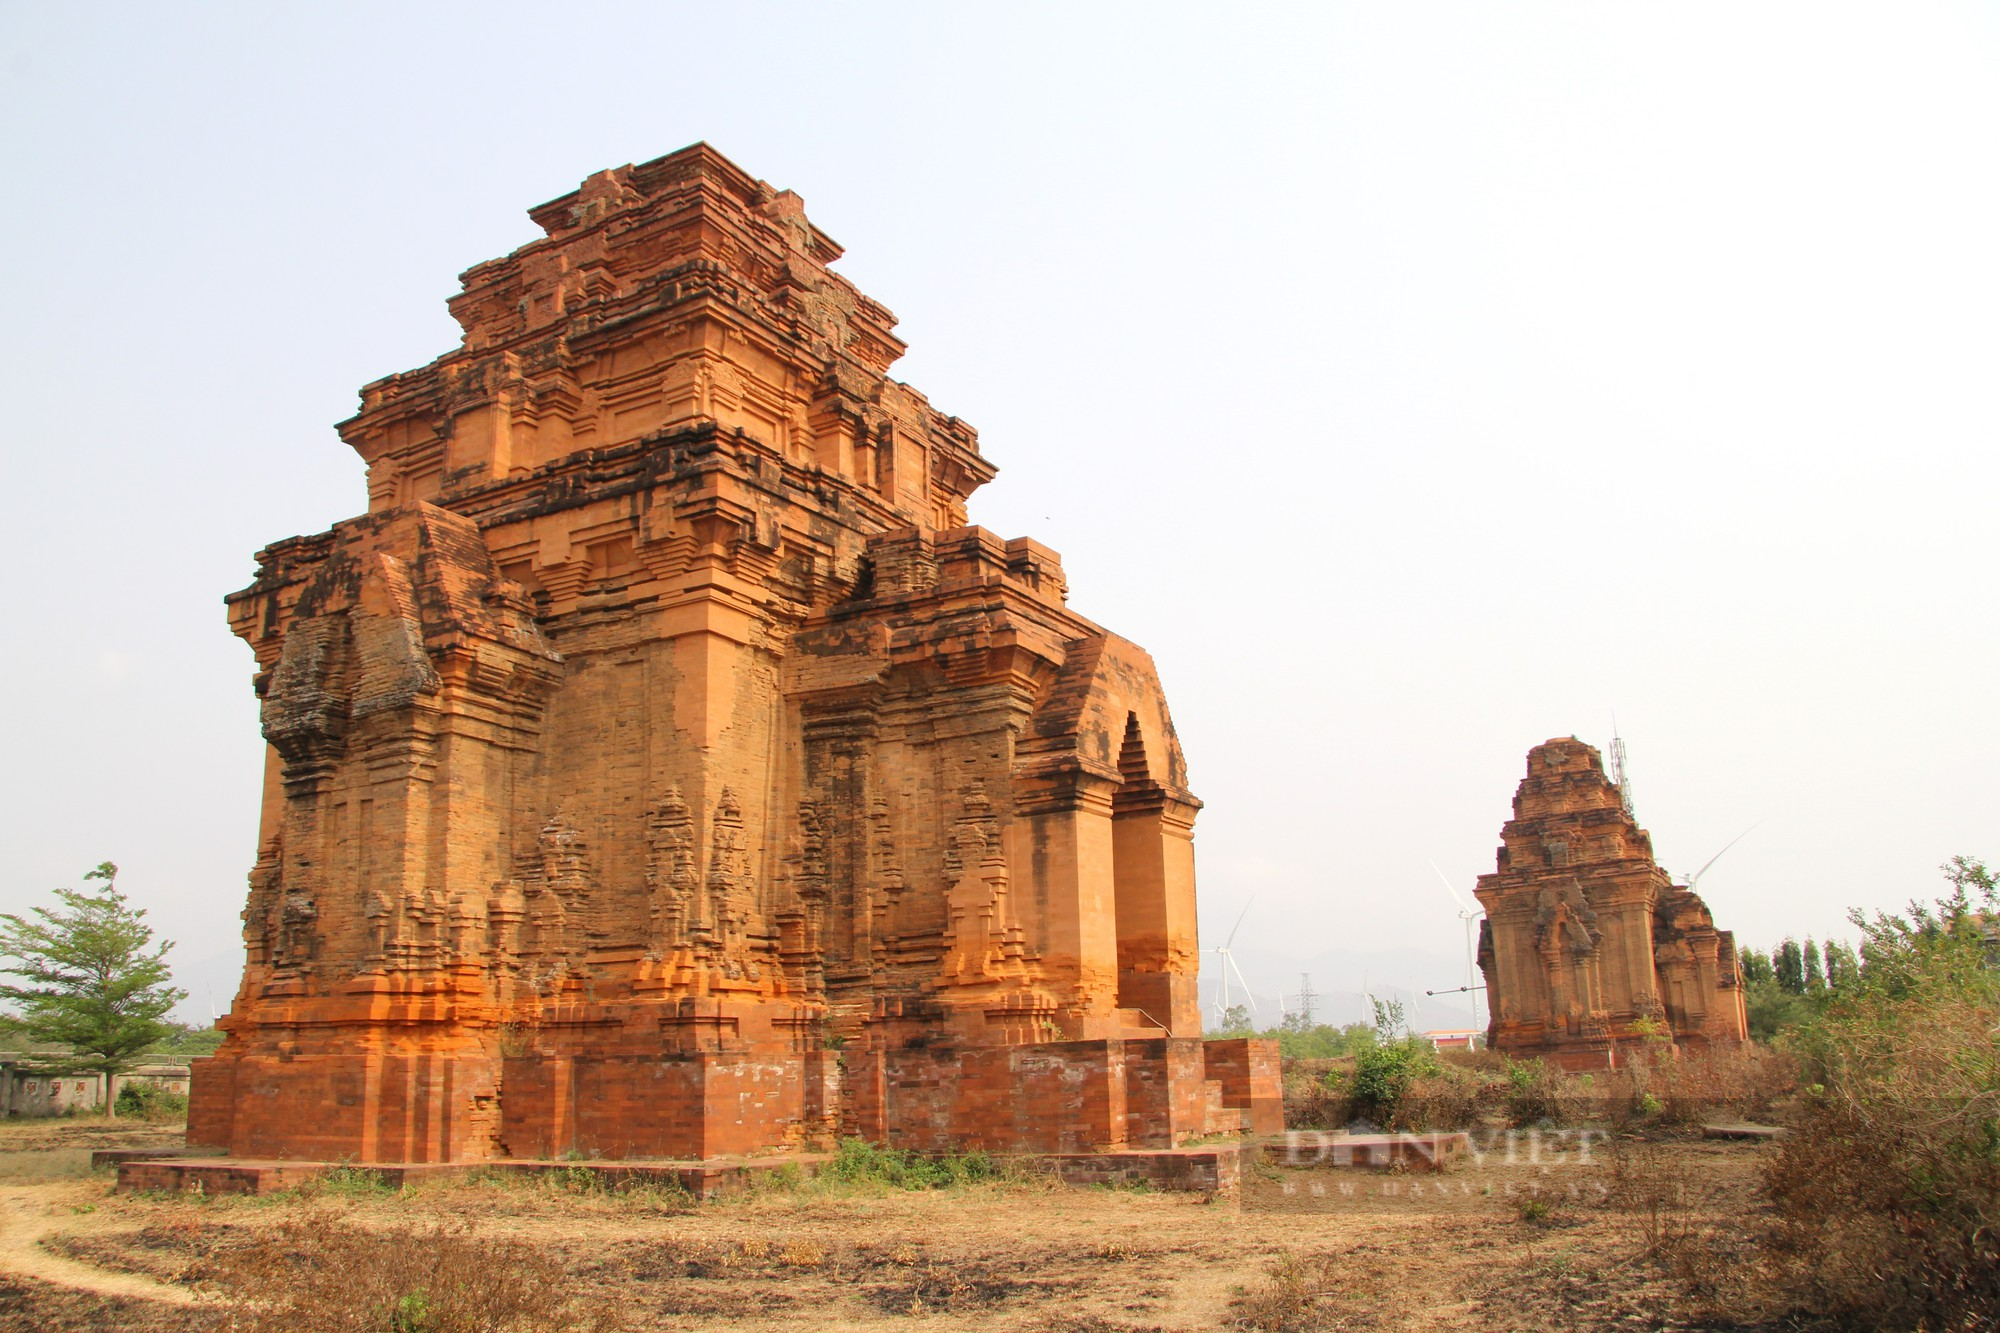 Bí ẩn tháp Chăm cổ “bị bỏ rơi” lại là nơi lưu giữ bảo vật Quốc gia có một không hai ở Ninh Thuận - Ảnh 1.